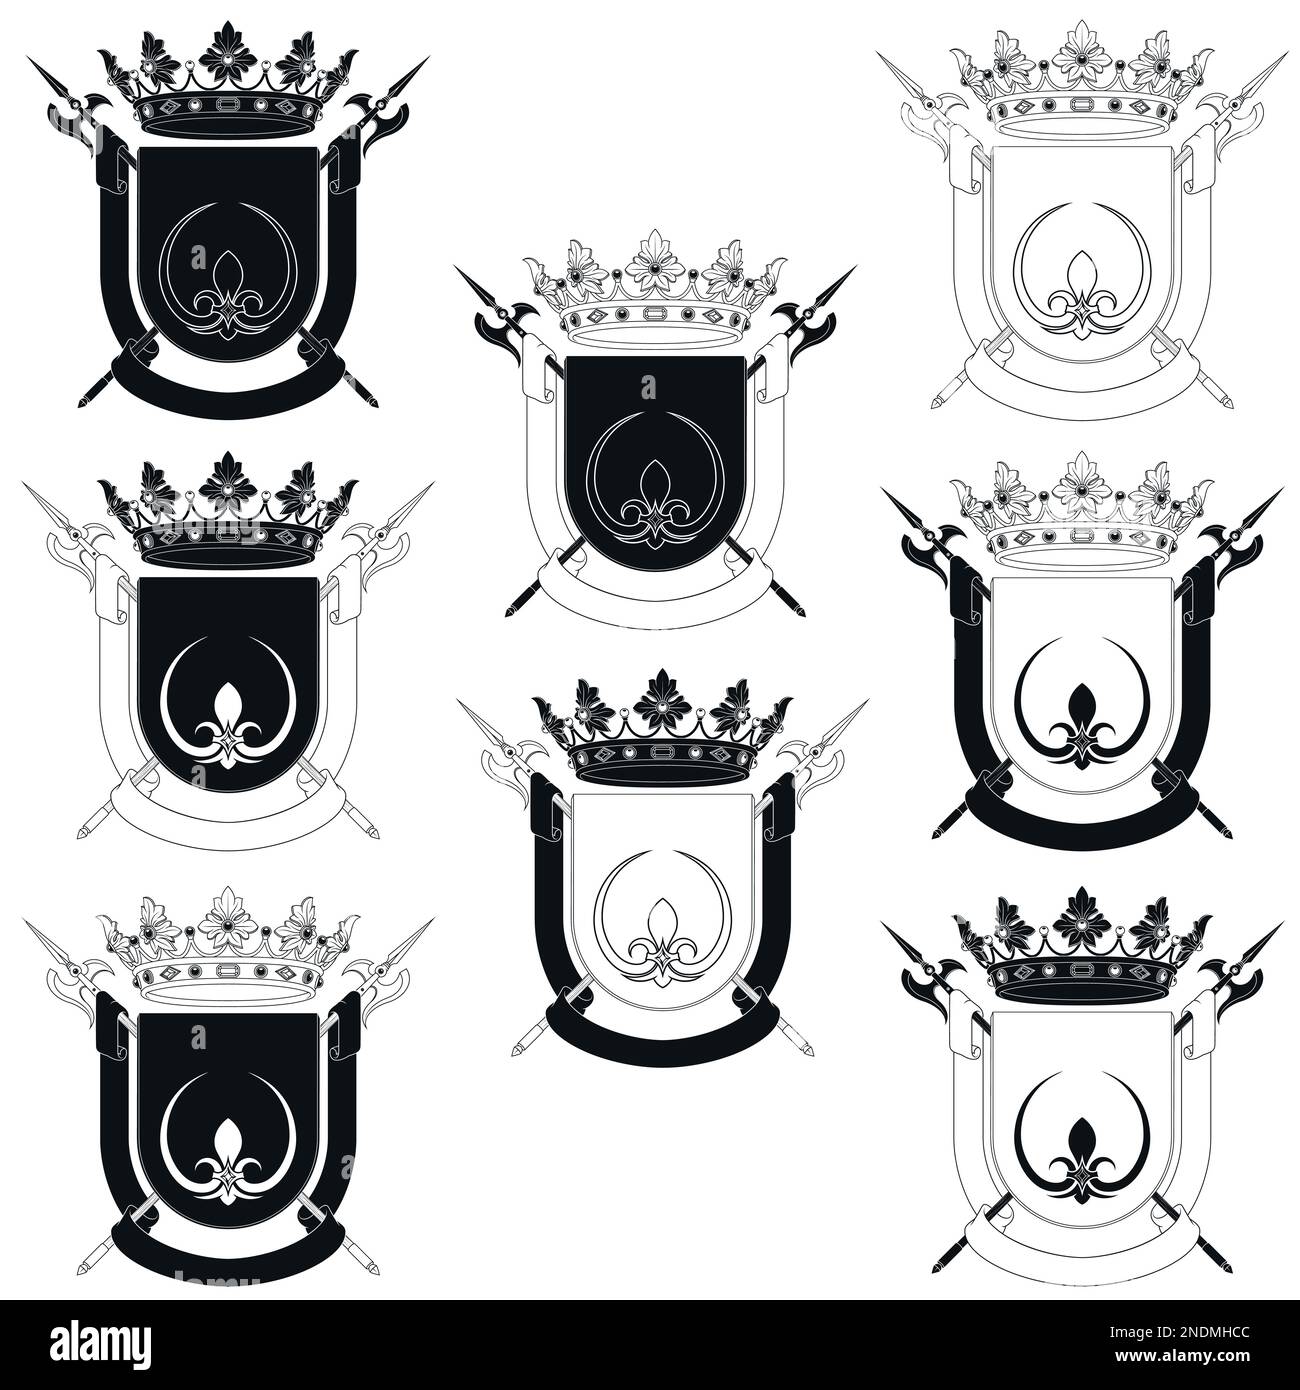 Motif vectoriel de bouclier héraldique du Moyen âge, blason avec fleur de lis, symbole héraldique, halberd, couronne et ruban Illustration de Vecteur